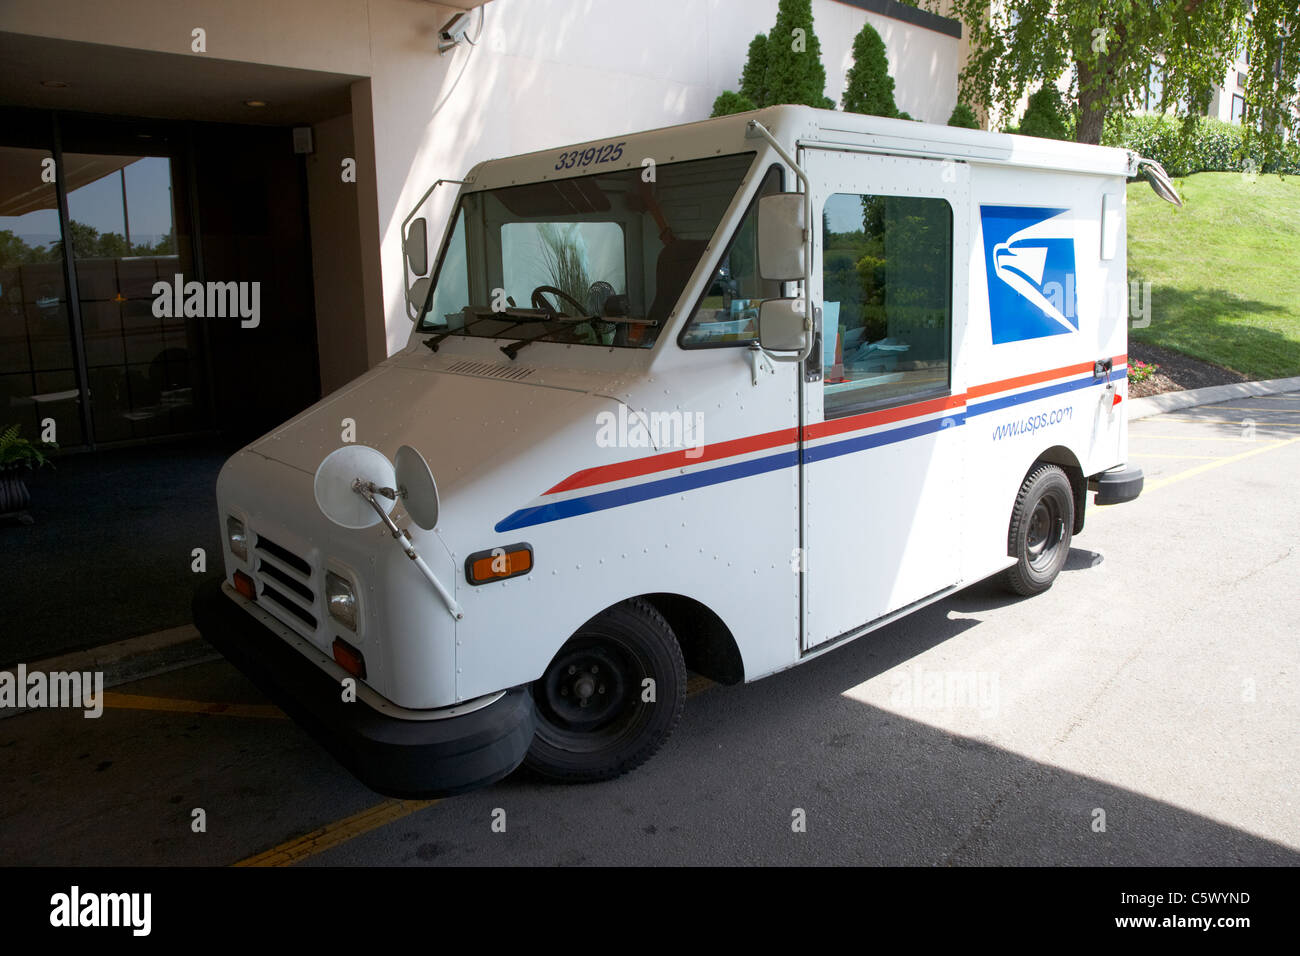 Usps américain united states postal service de distribution et de collecte van Nashville Tennessee usa Banque D'Images